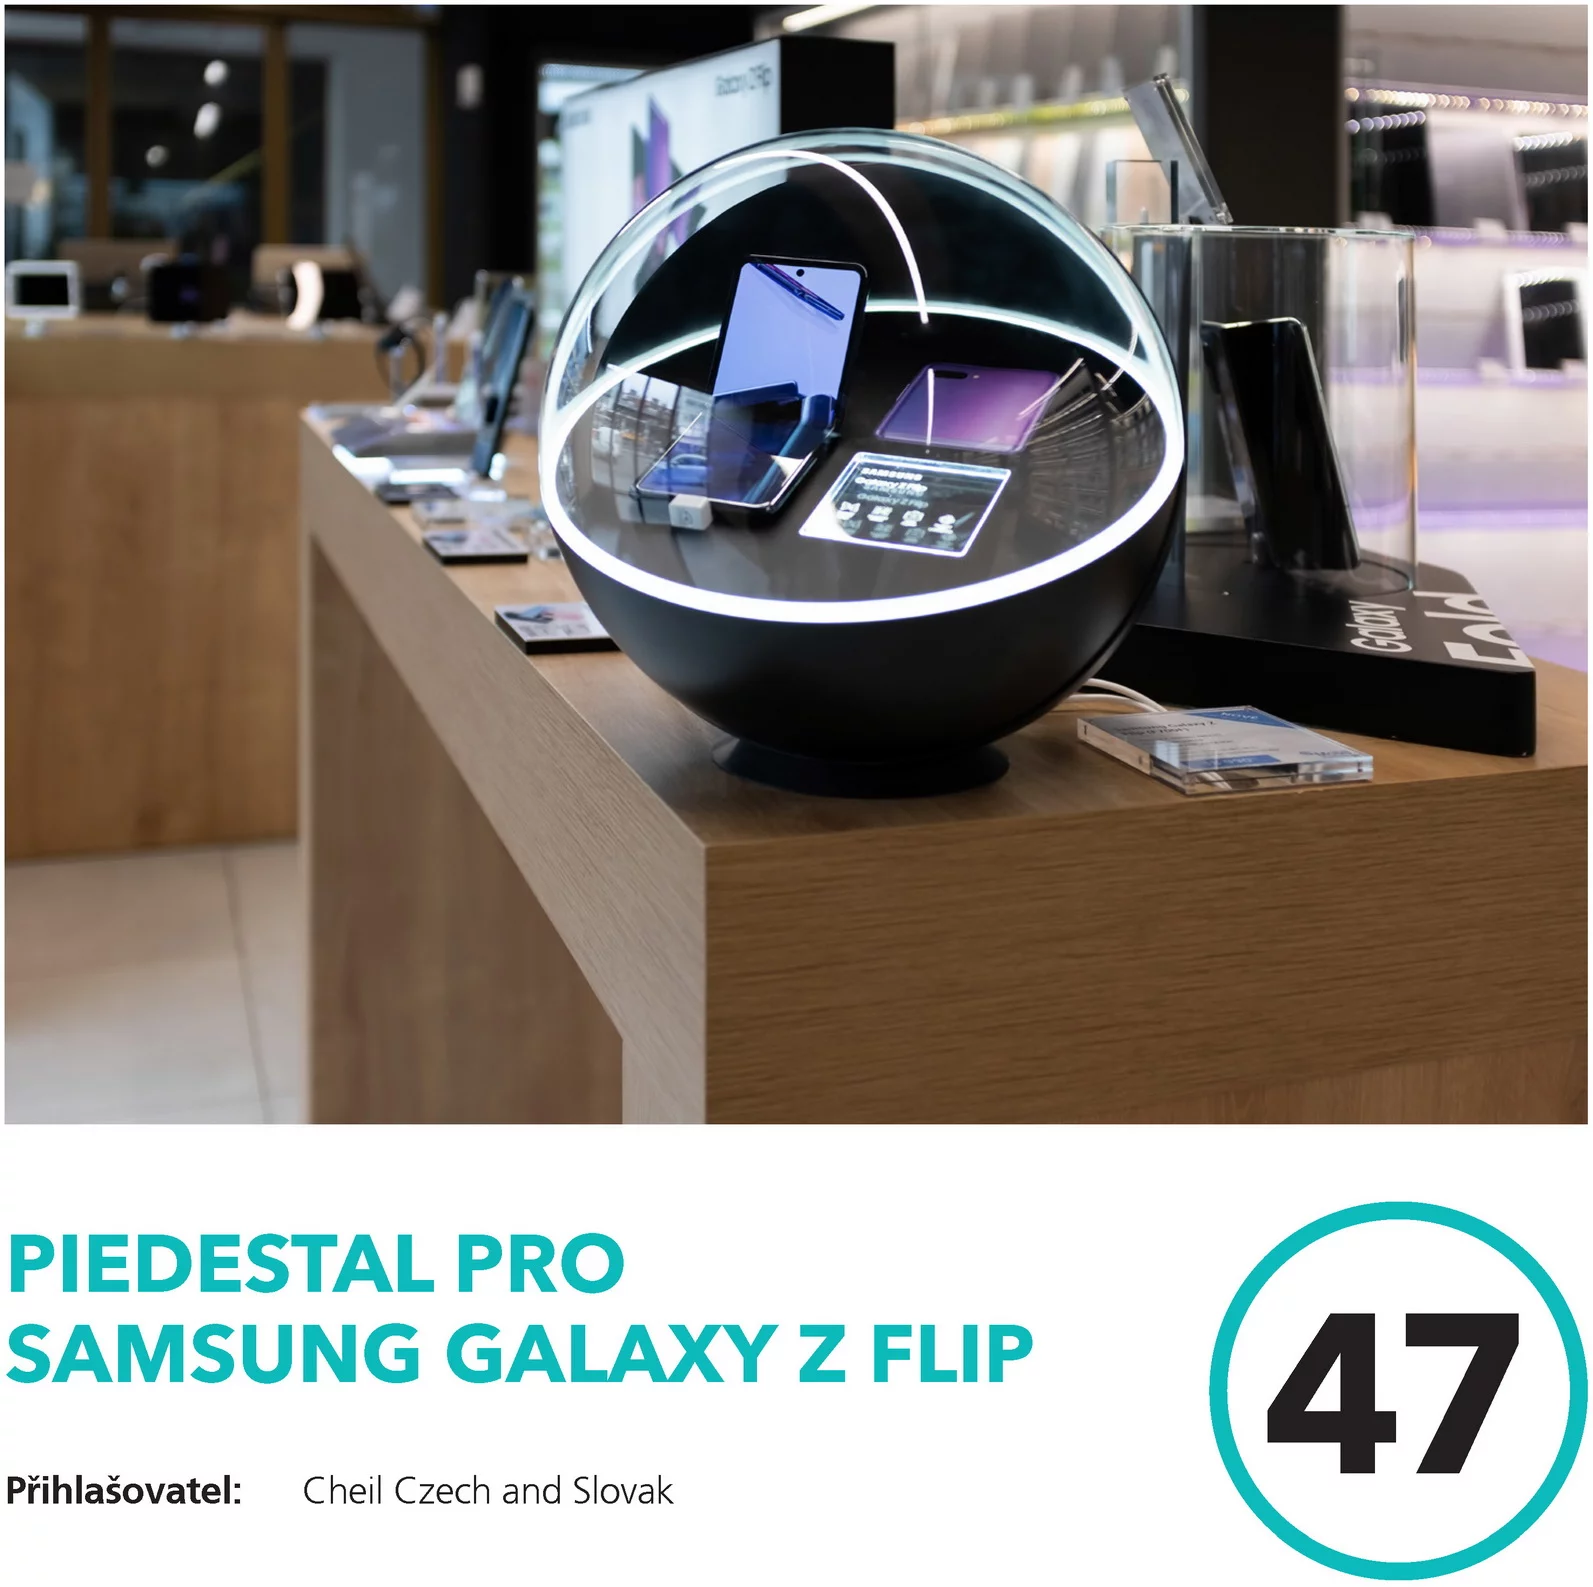 Piedestal pro Samsung Galaxy Z Flip